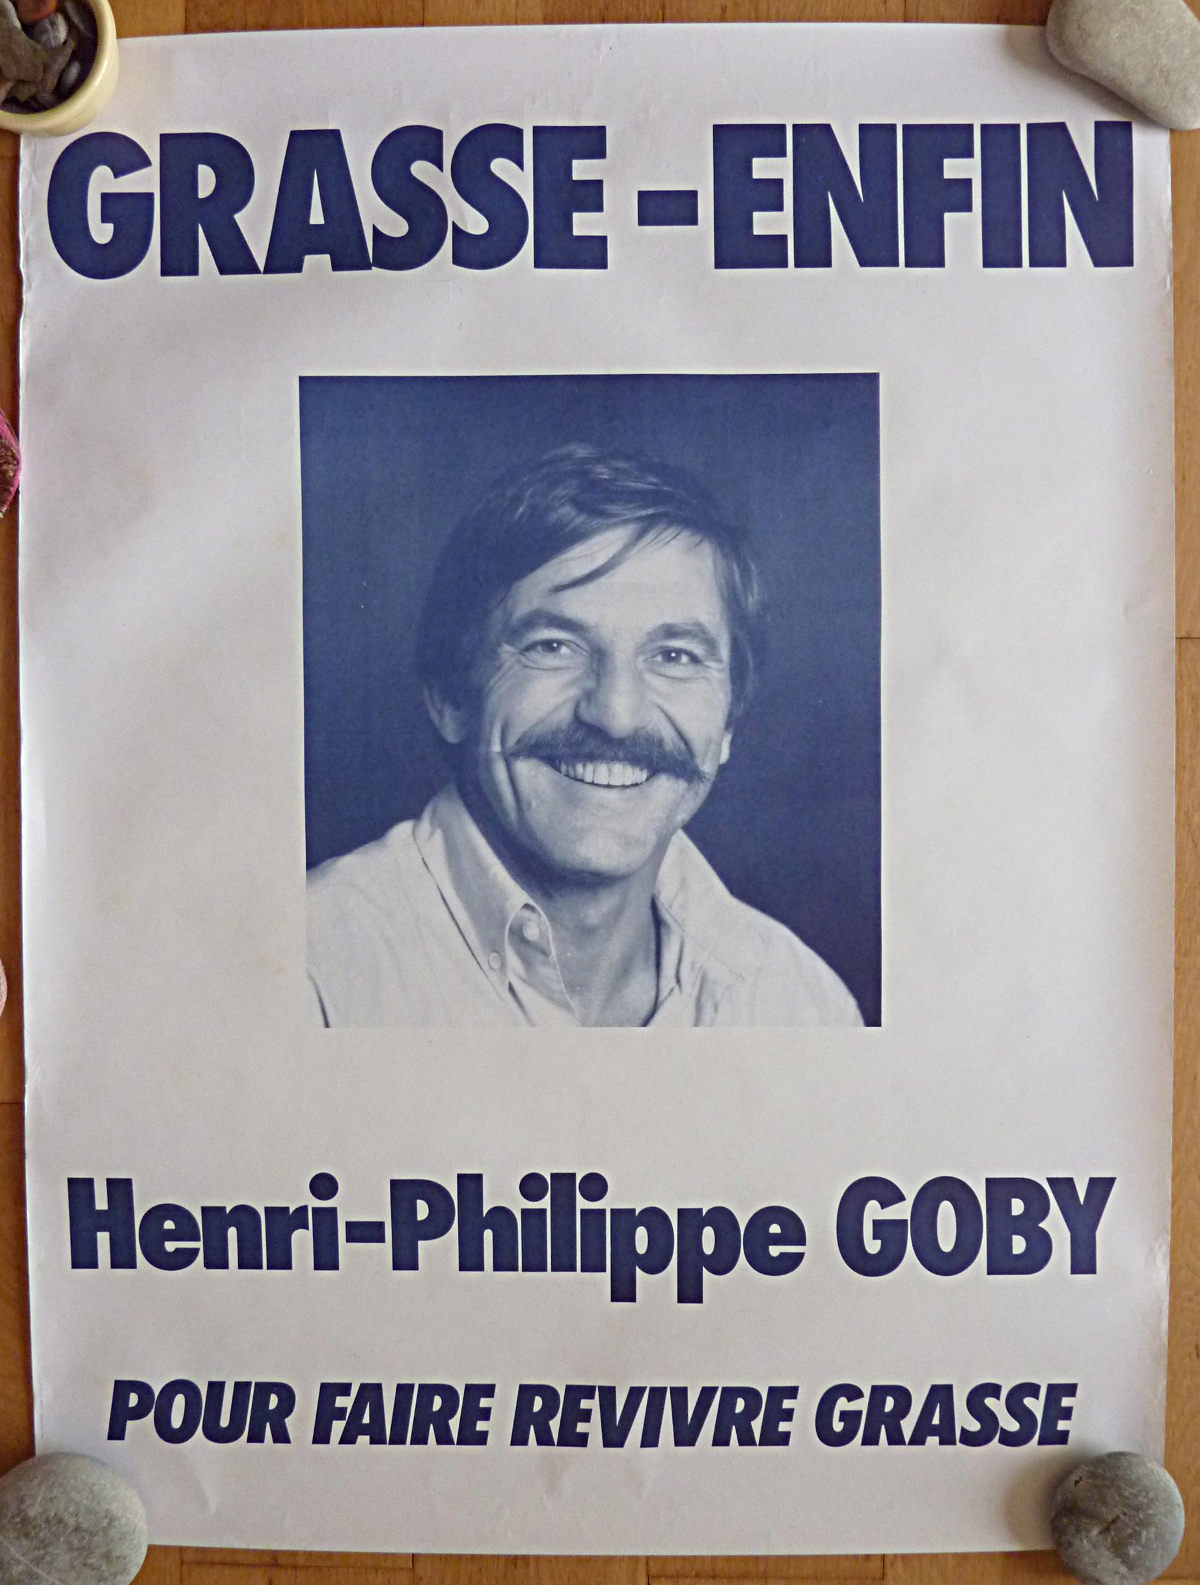 Henri Philippe Goby sous l'étiquette Grasse-Enfin